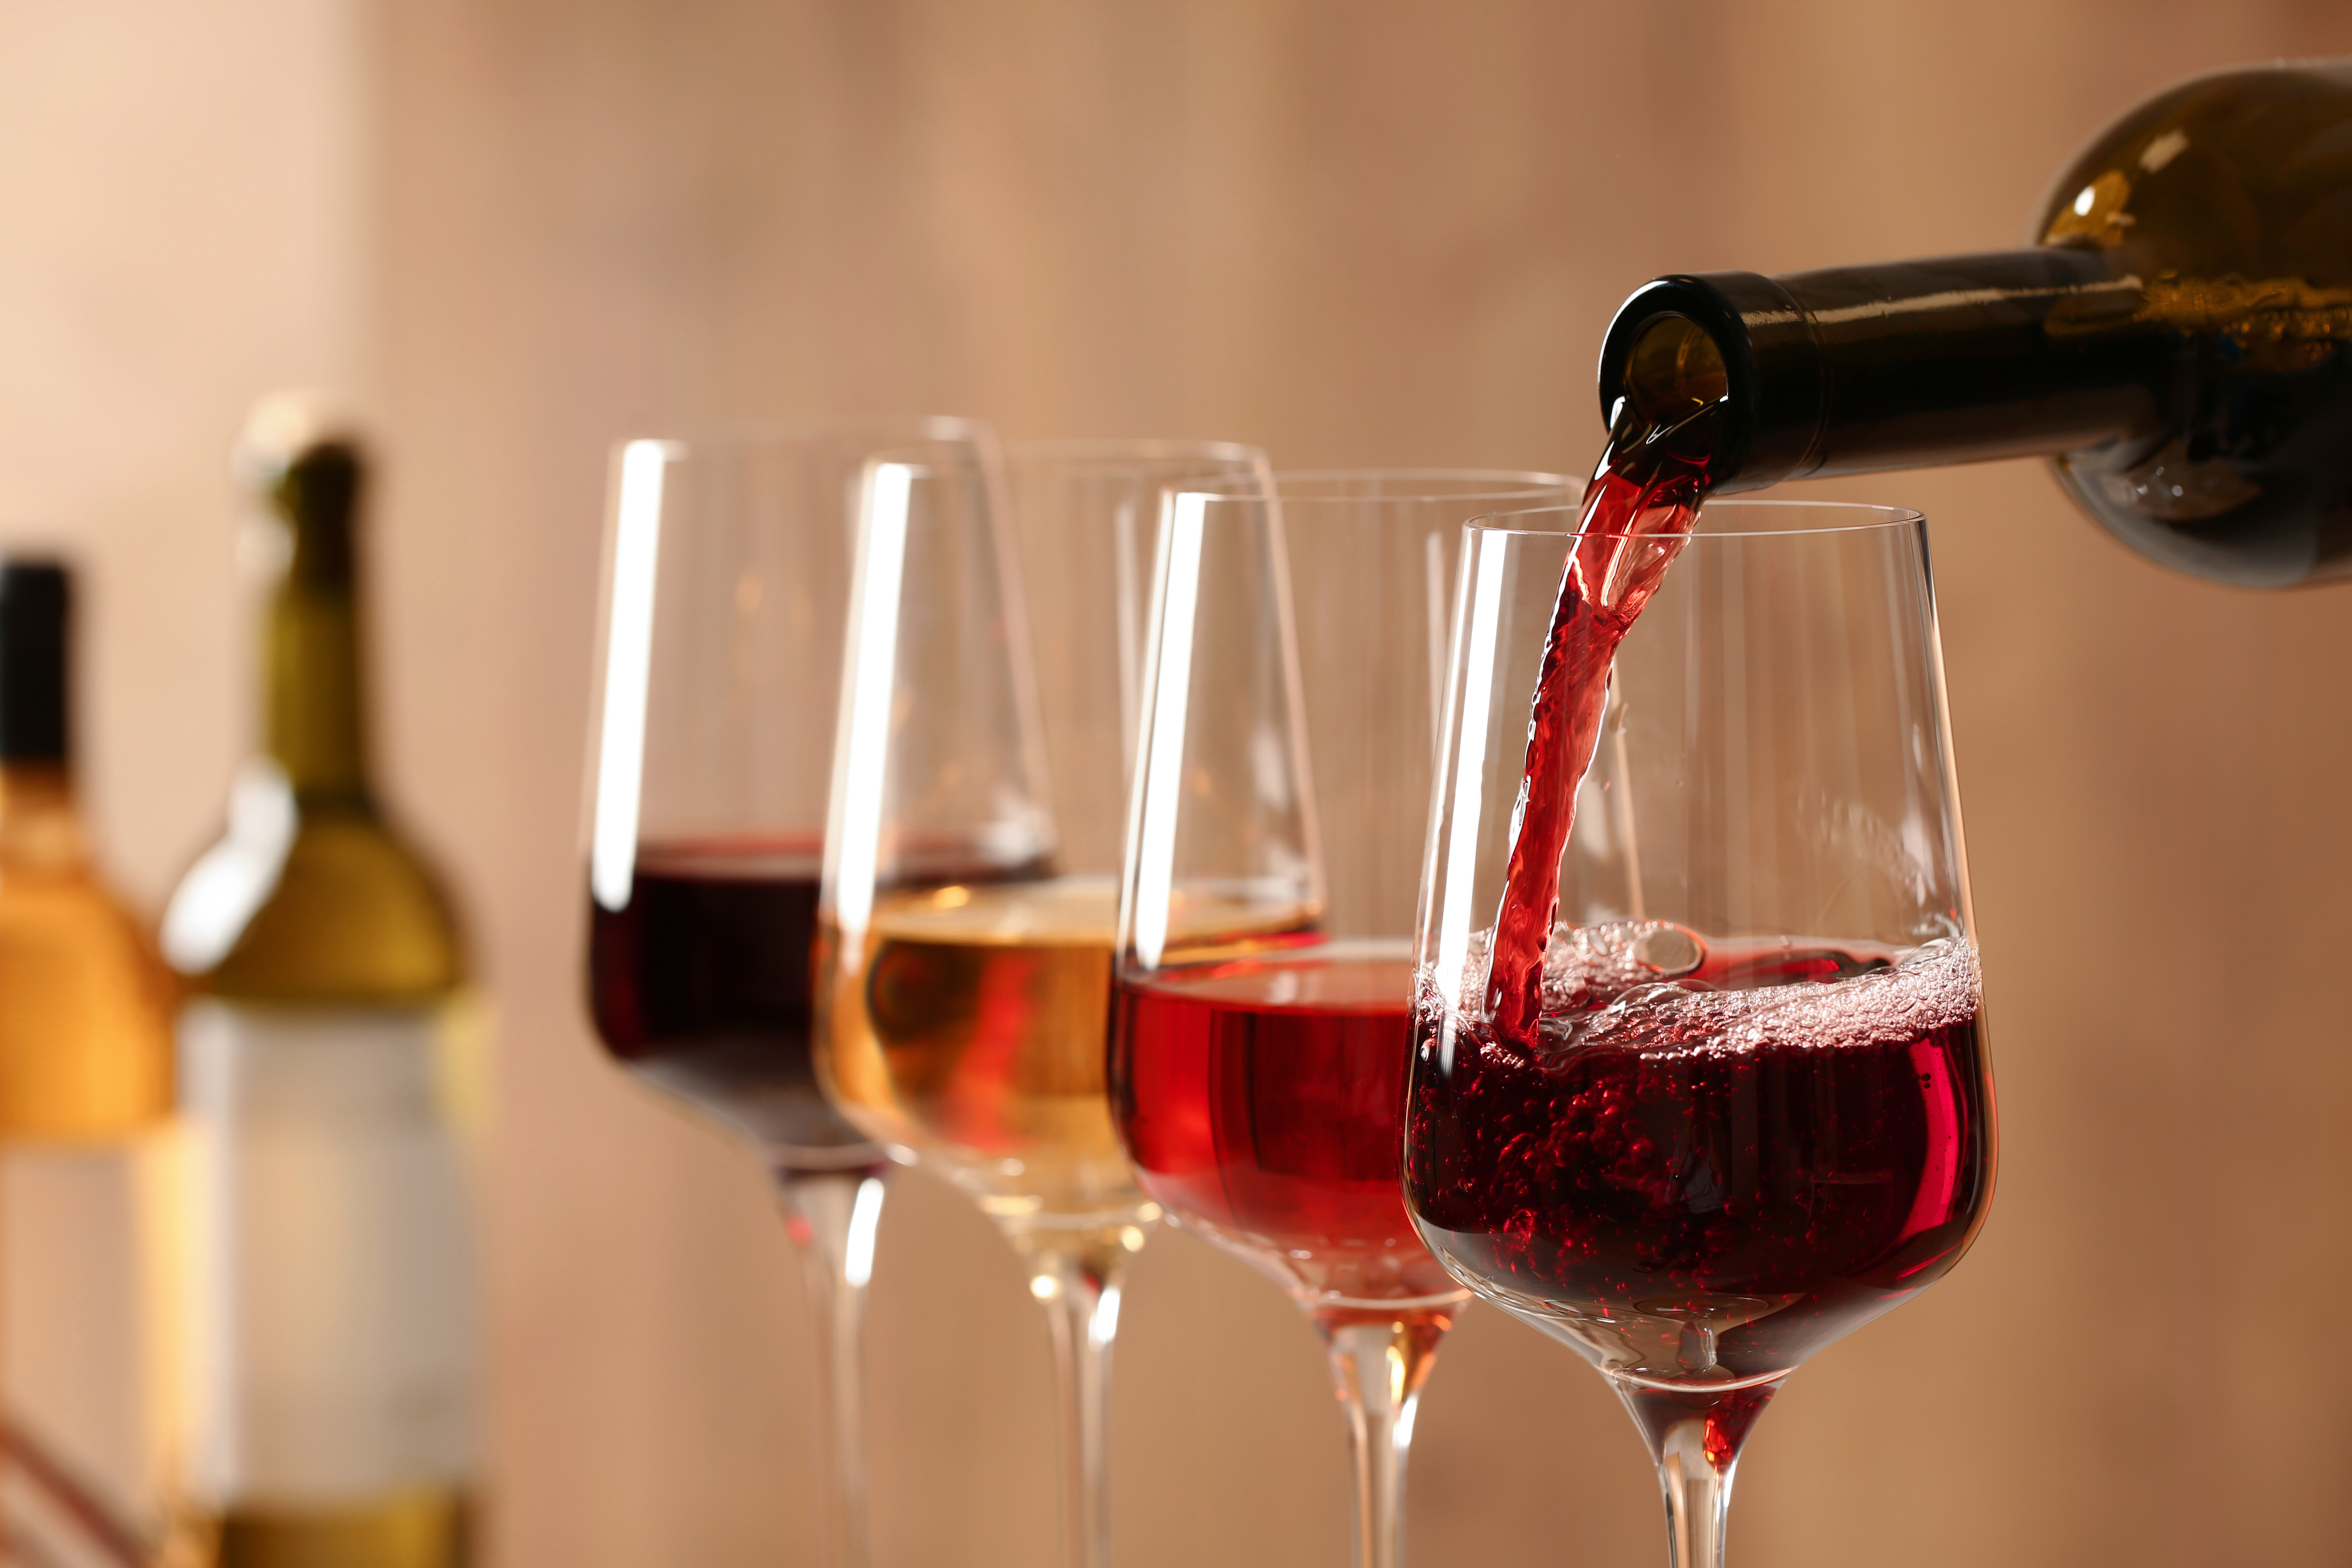 Wein wird aus Flasche in Gläser gegossen, Hintergrund blurry